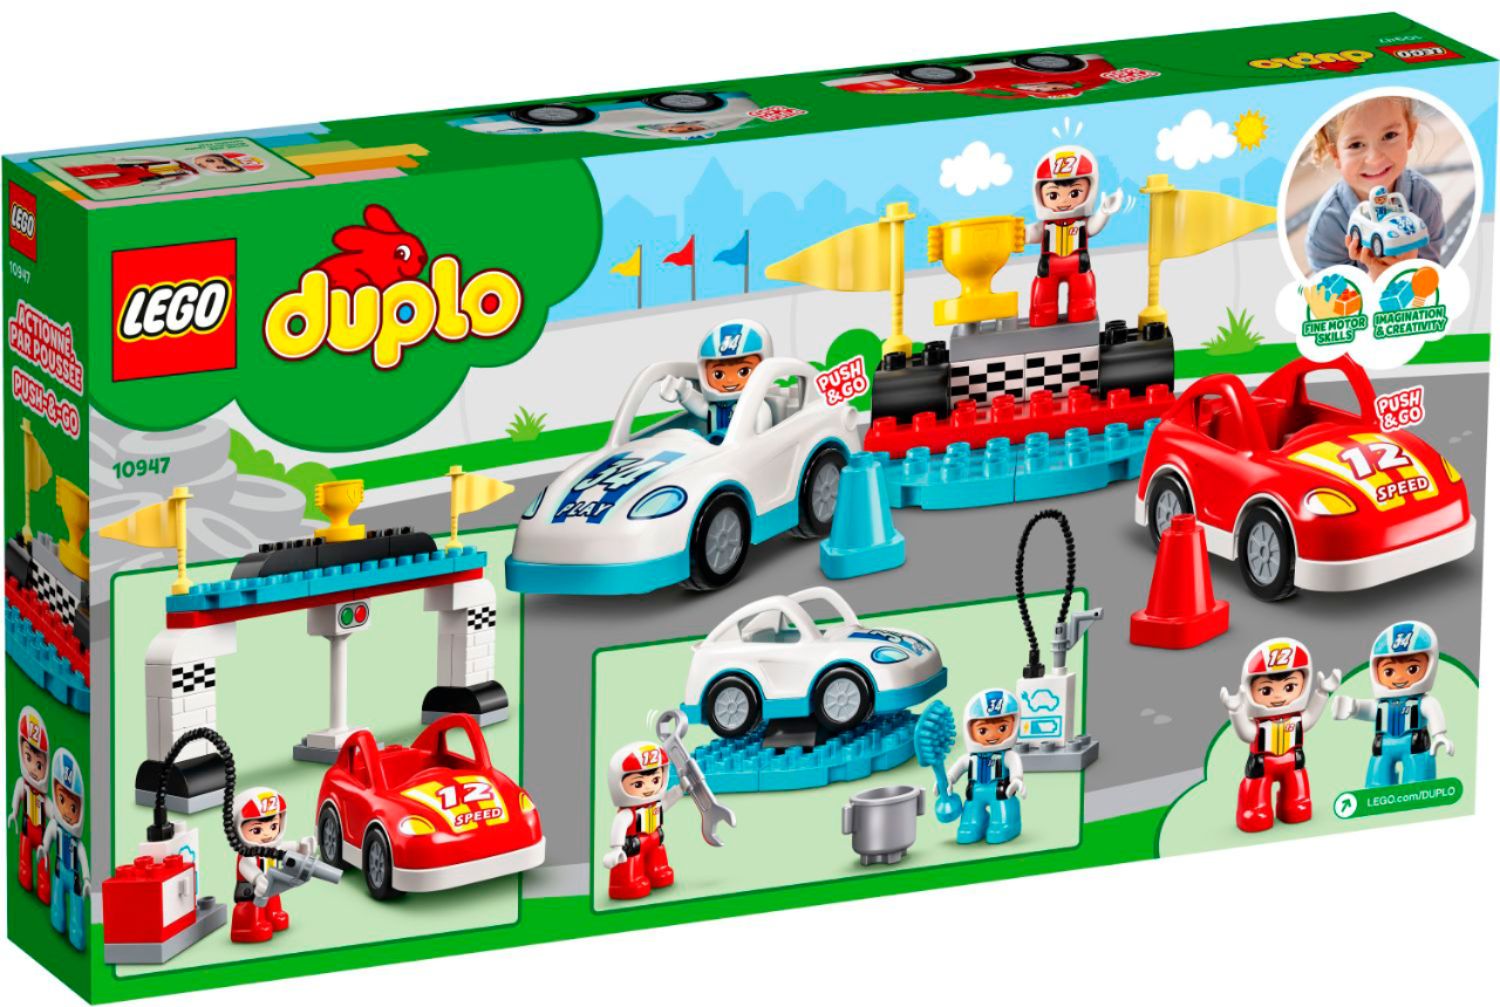 LEGO DUPLO My First Bricks 10848 6174762 - Best Buy